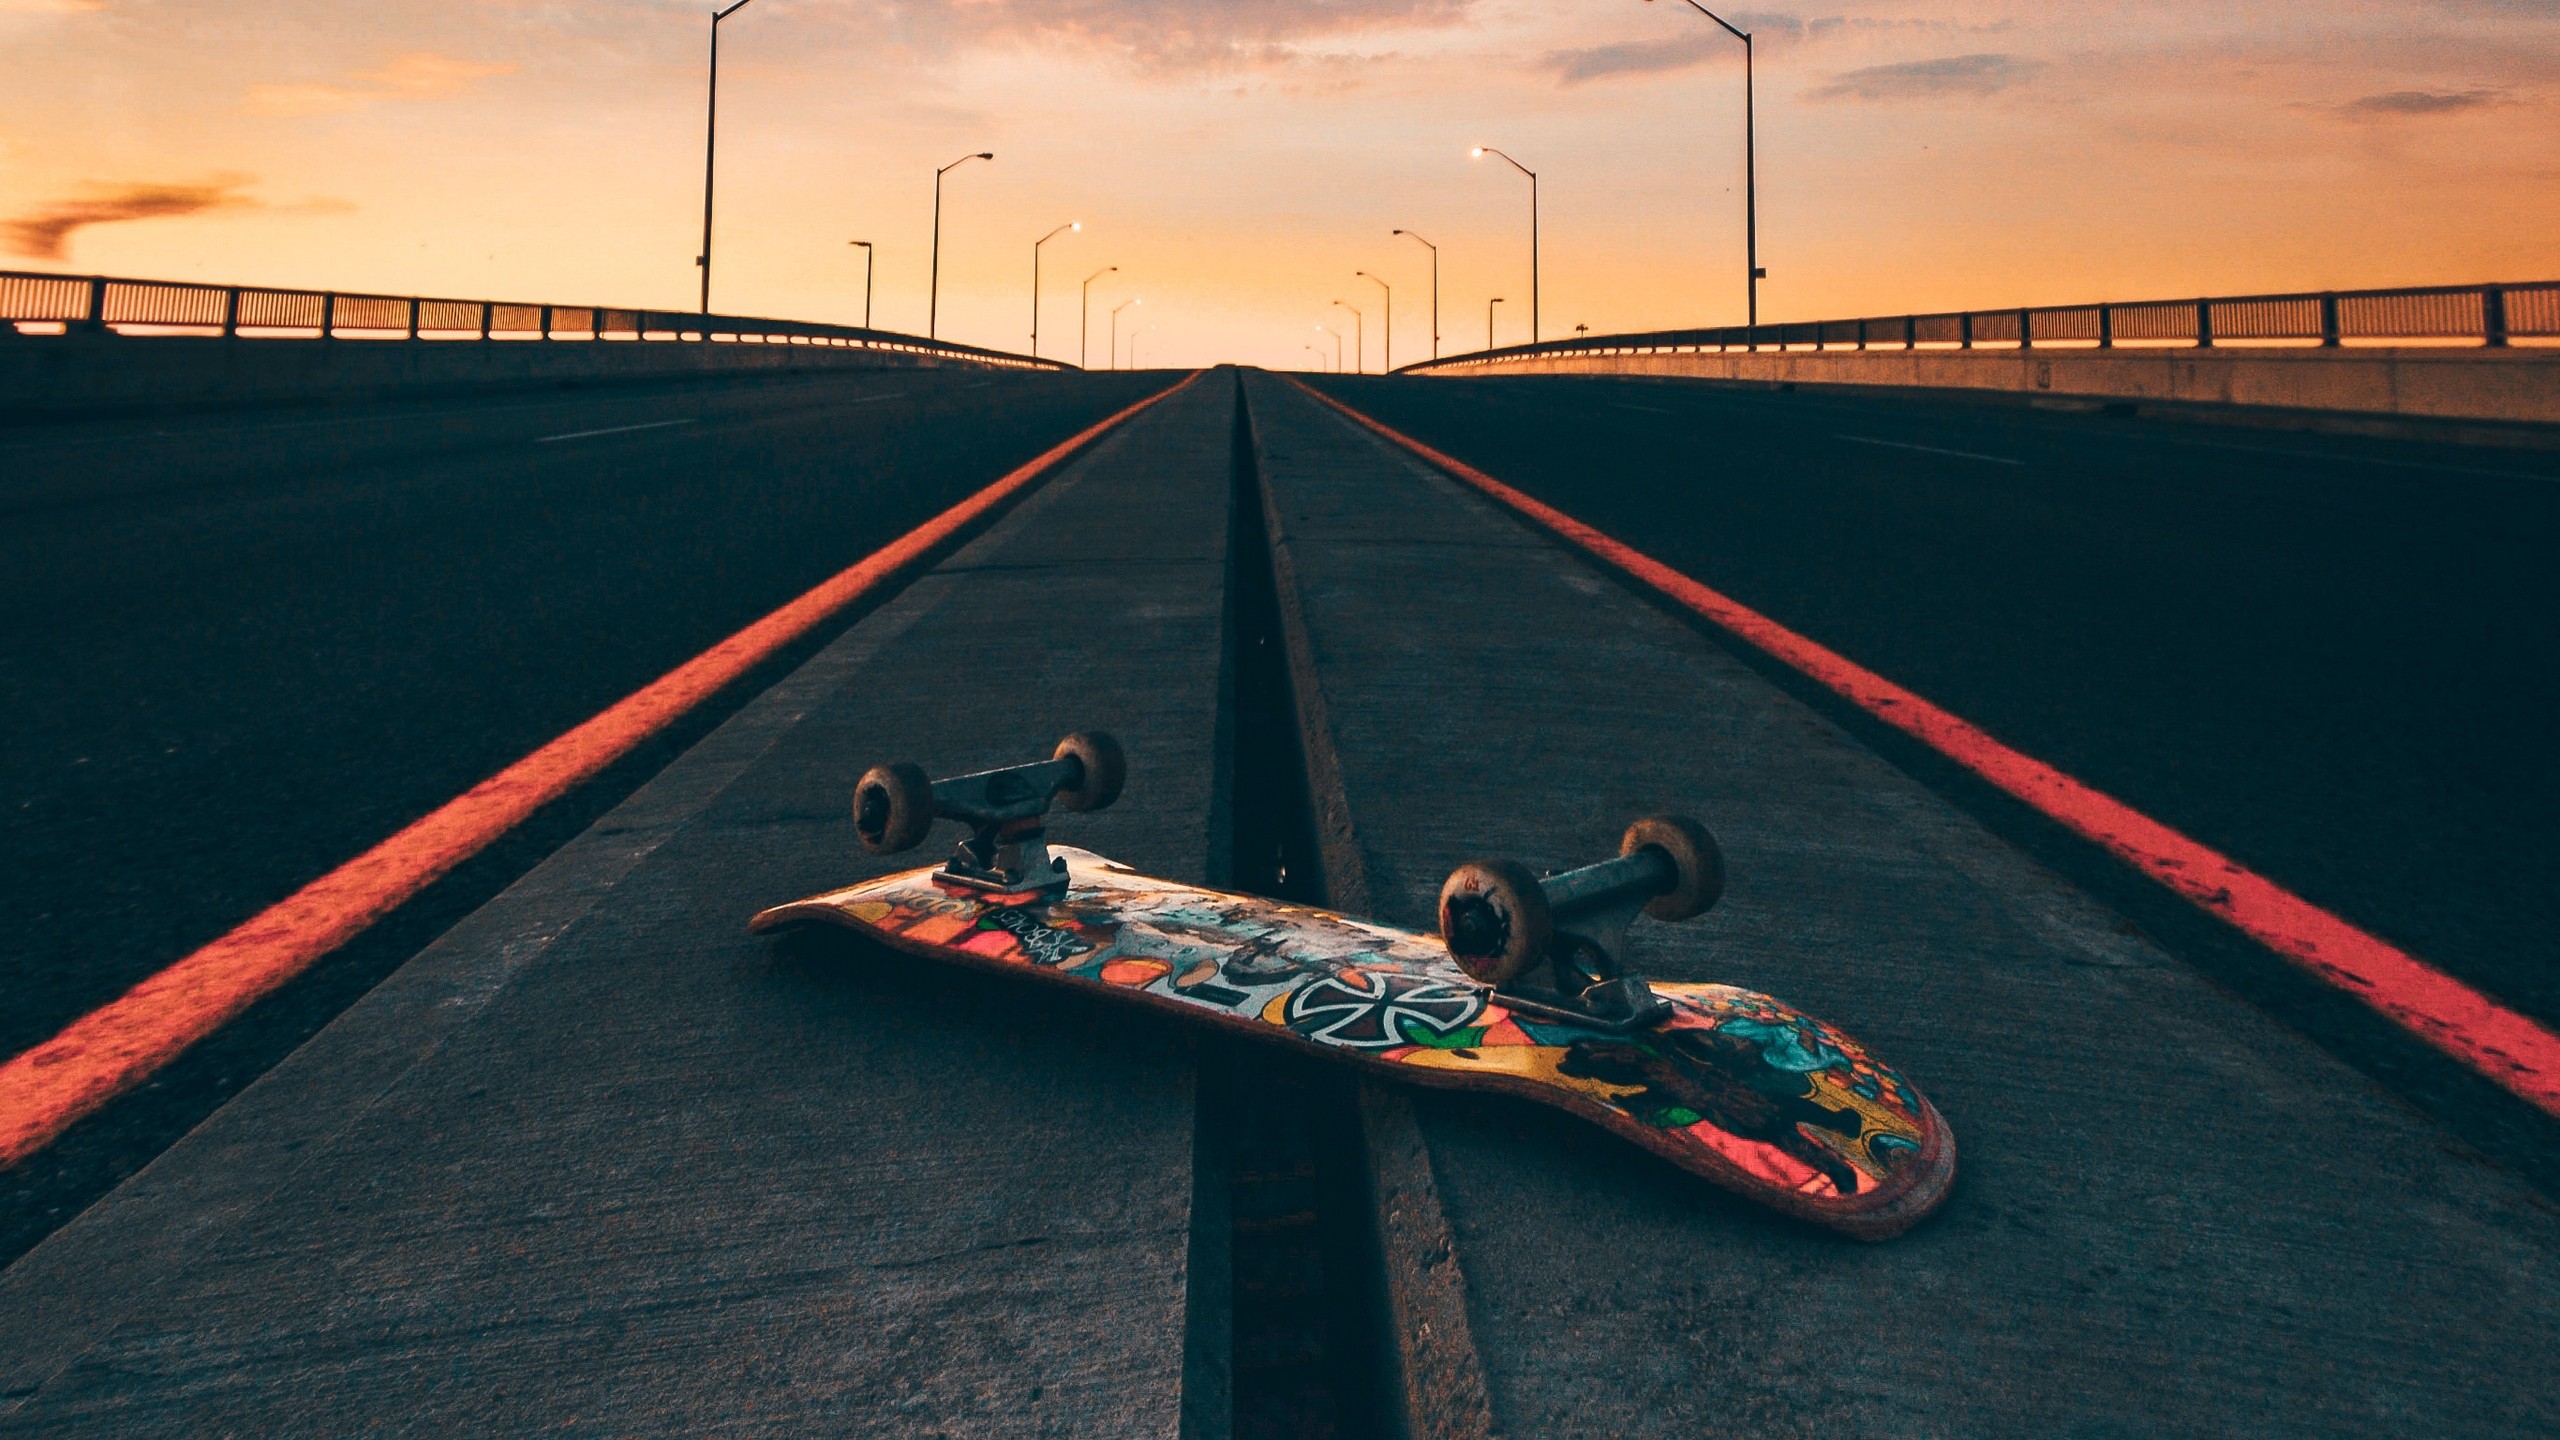 Skateboard Wallpapers